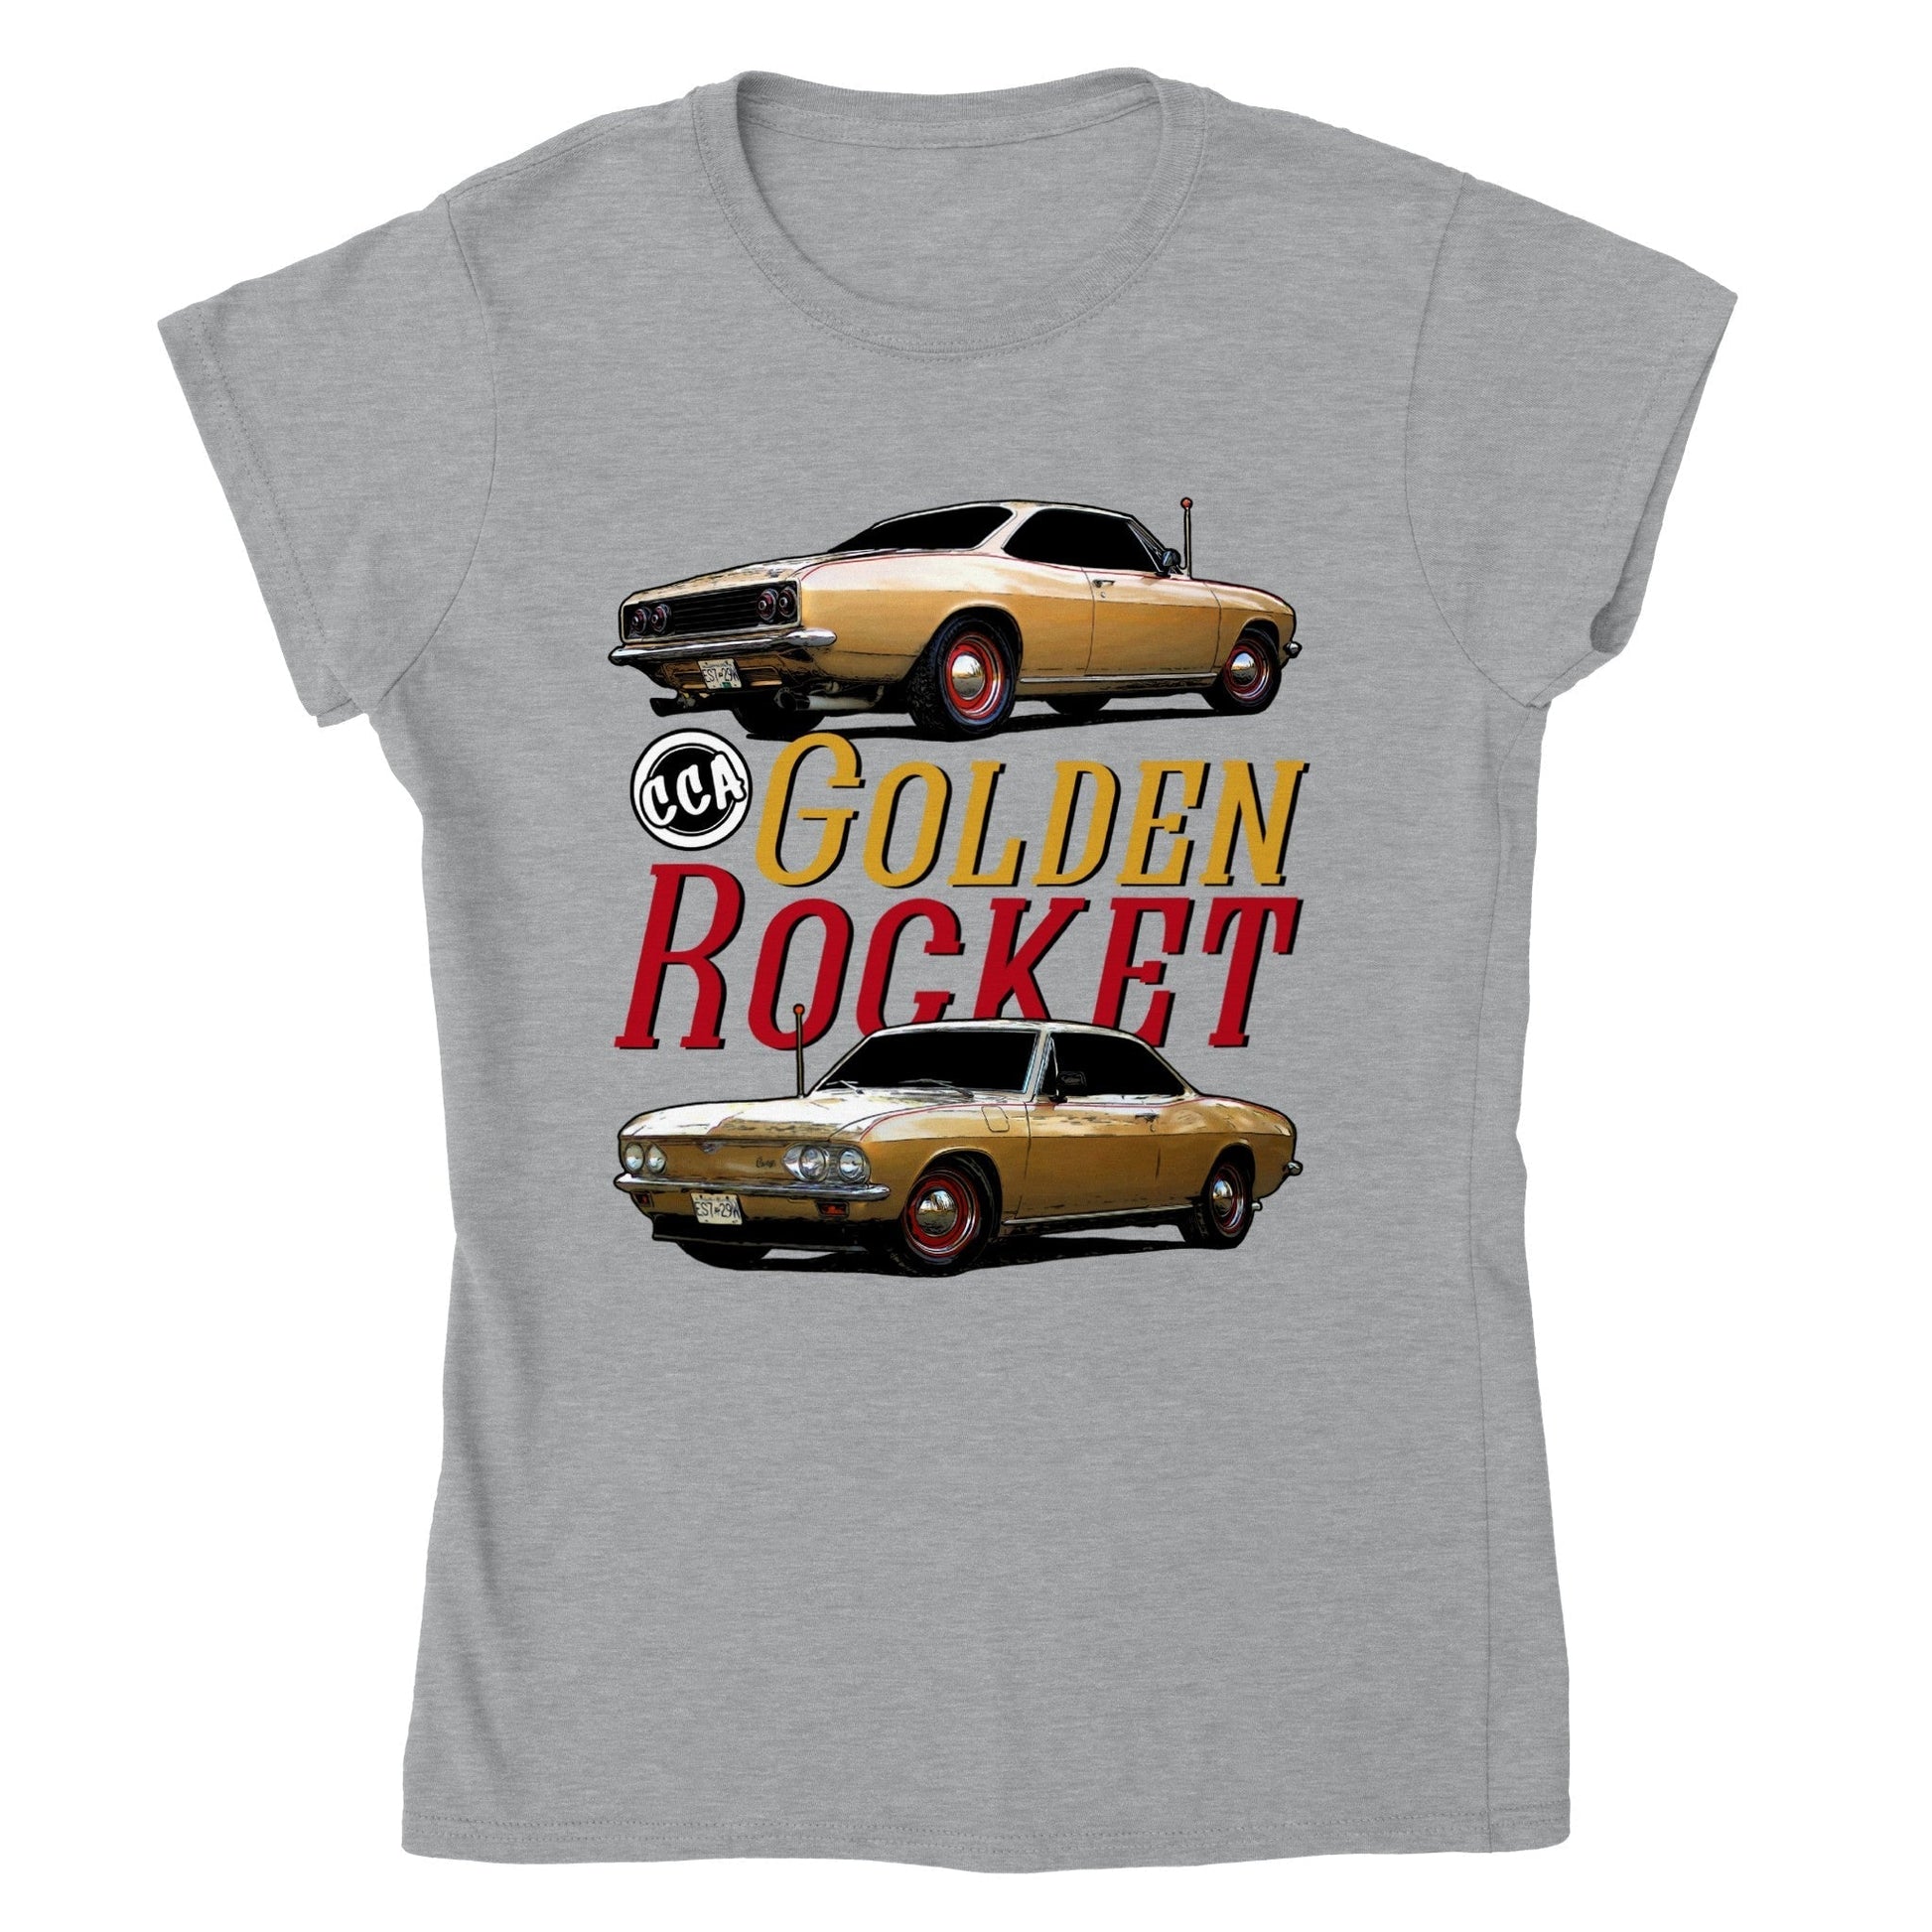 Print Material - Womens Golden Rocket T-shirt